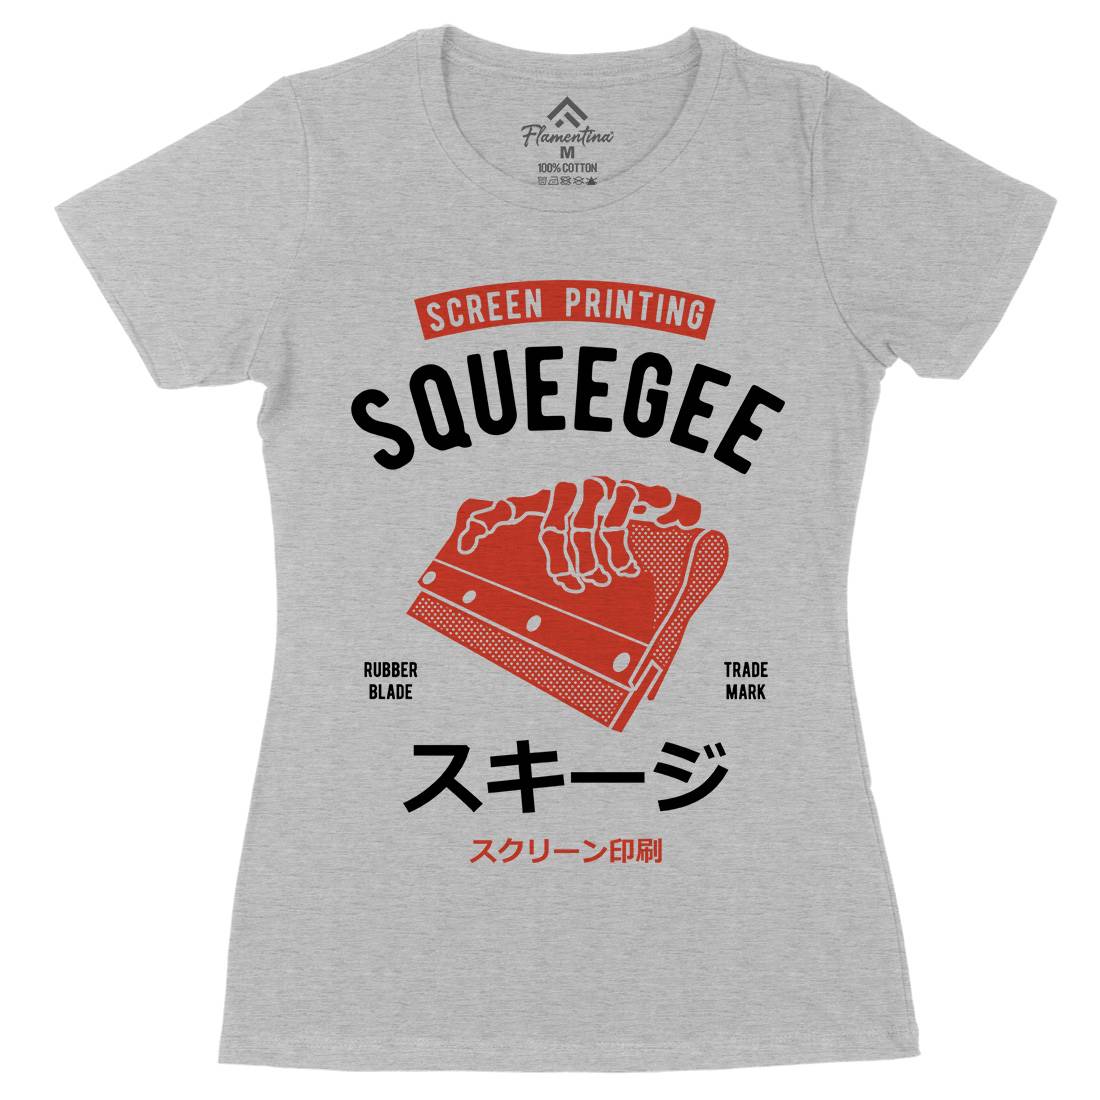 Squeegee Social Club Womens Organic Crew Neck T-Shirt Work A282